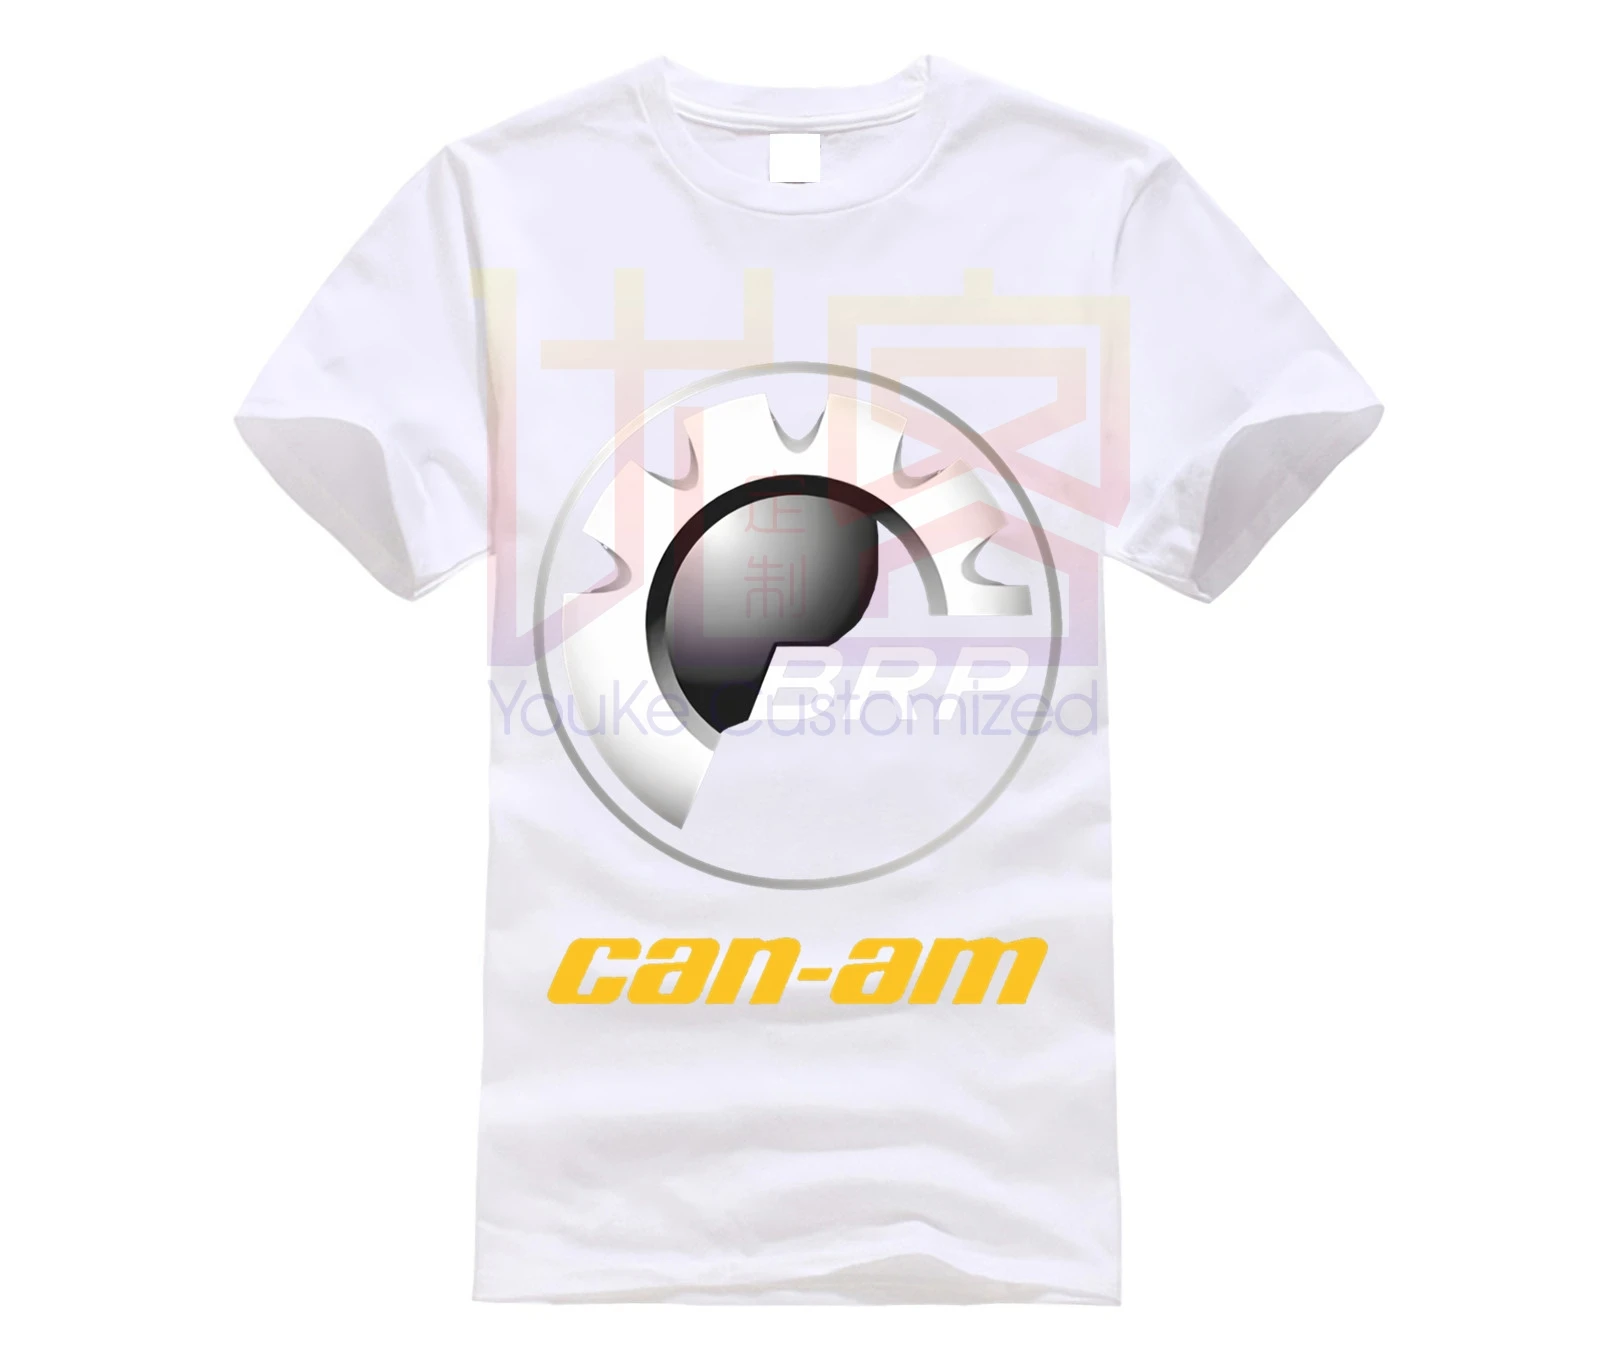 Футболка мужская с логотипом CAN AM черная хлопковая футболка коротким рукавом BRP ATV